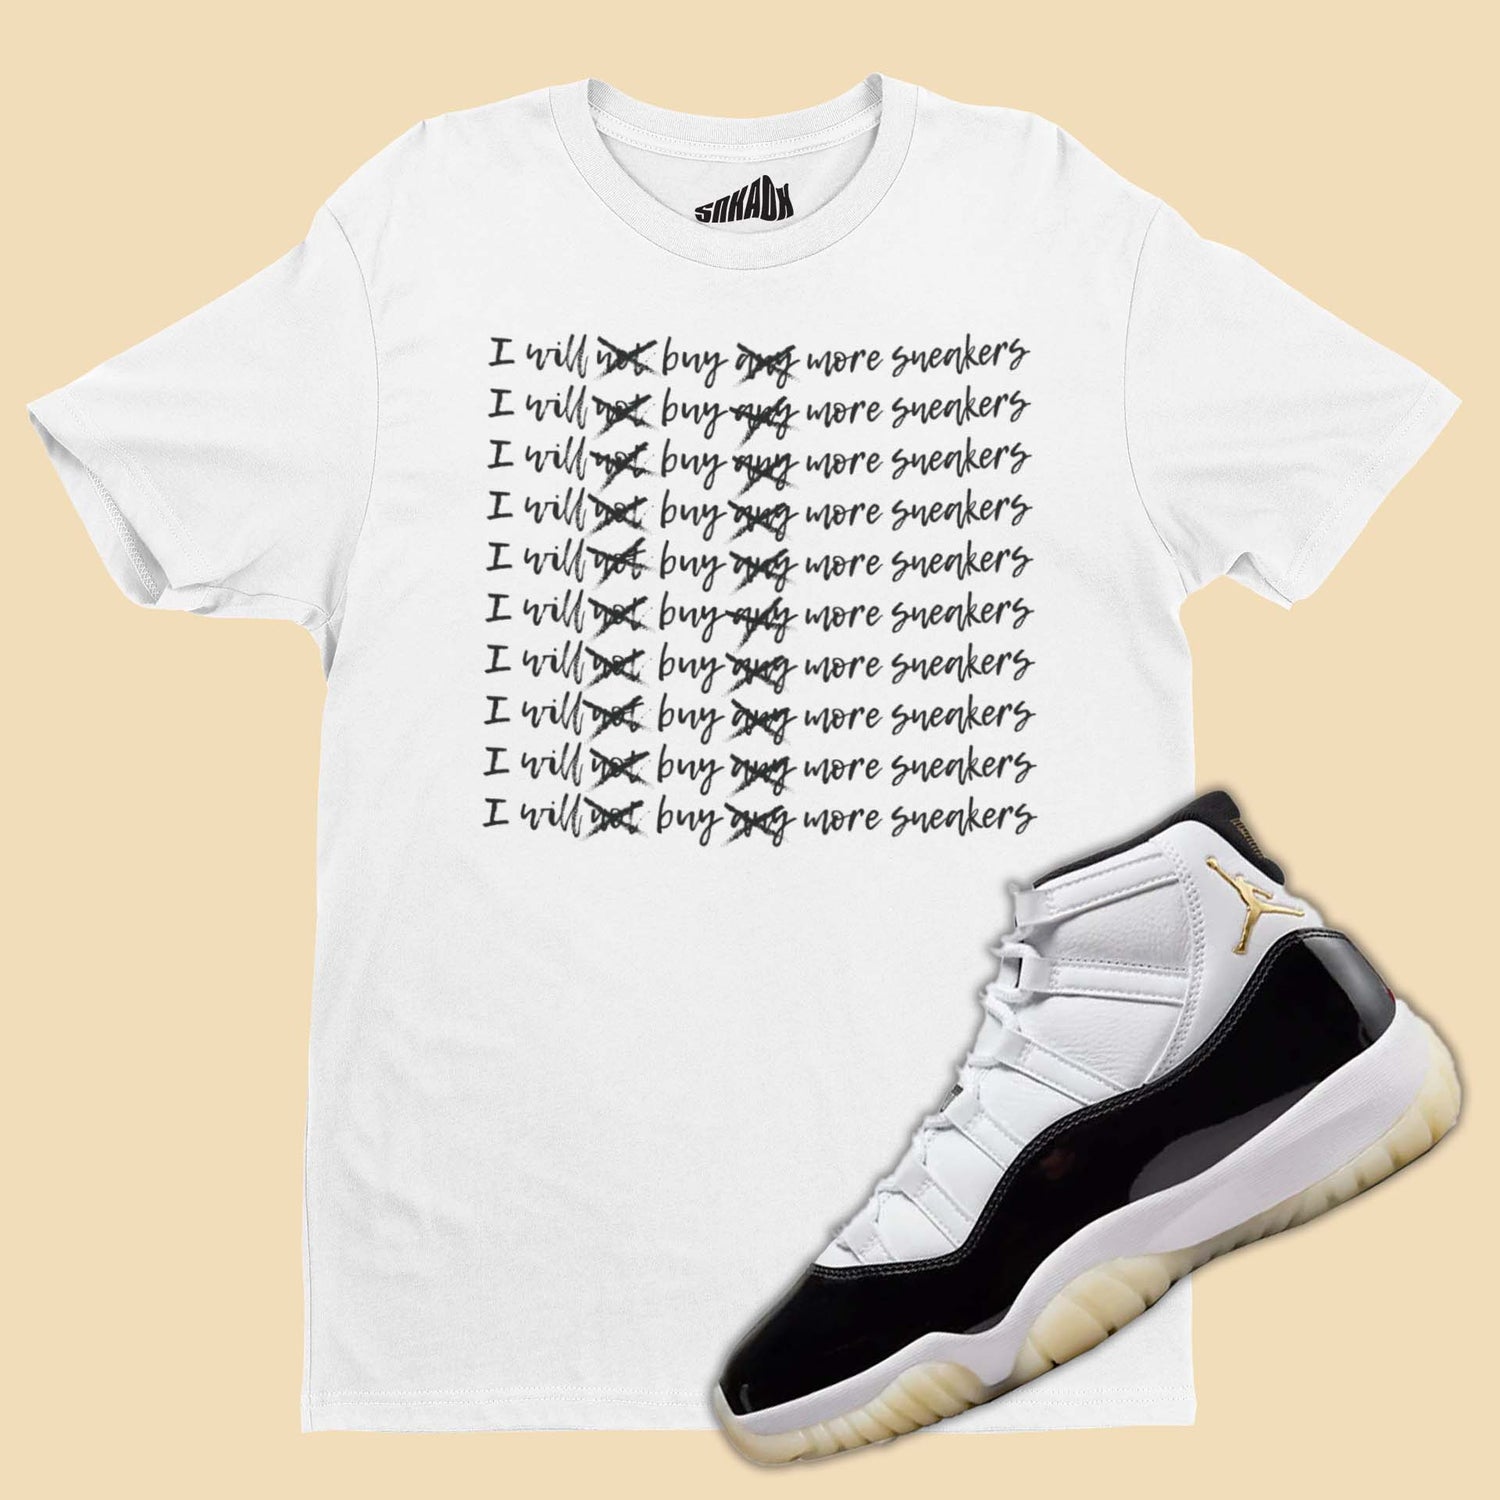 Buy More Sneakers T-Shirt Matching Air Jordan 11 Gratitude